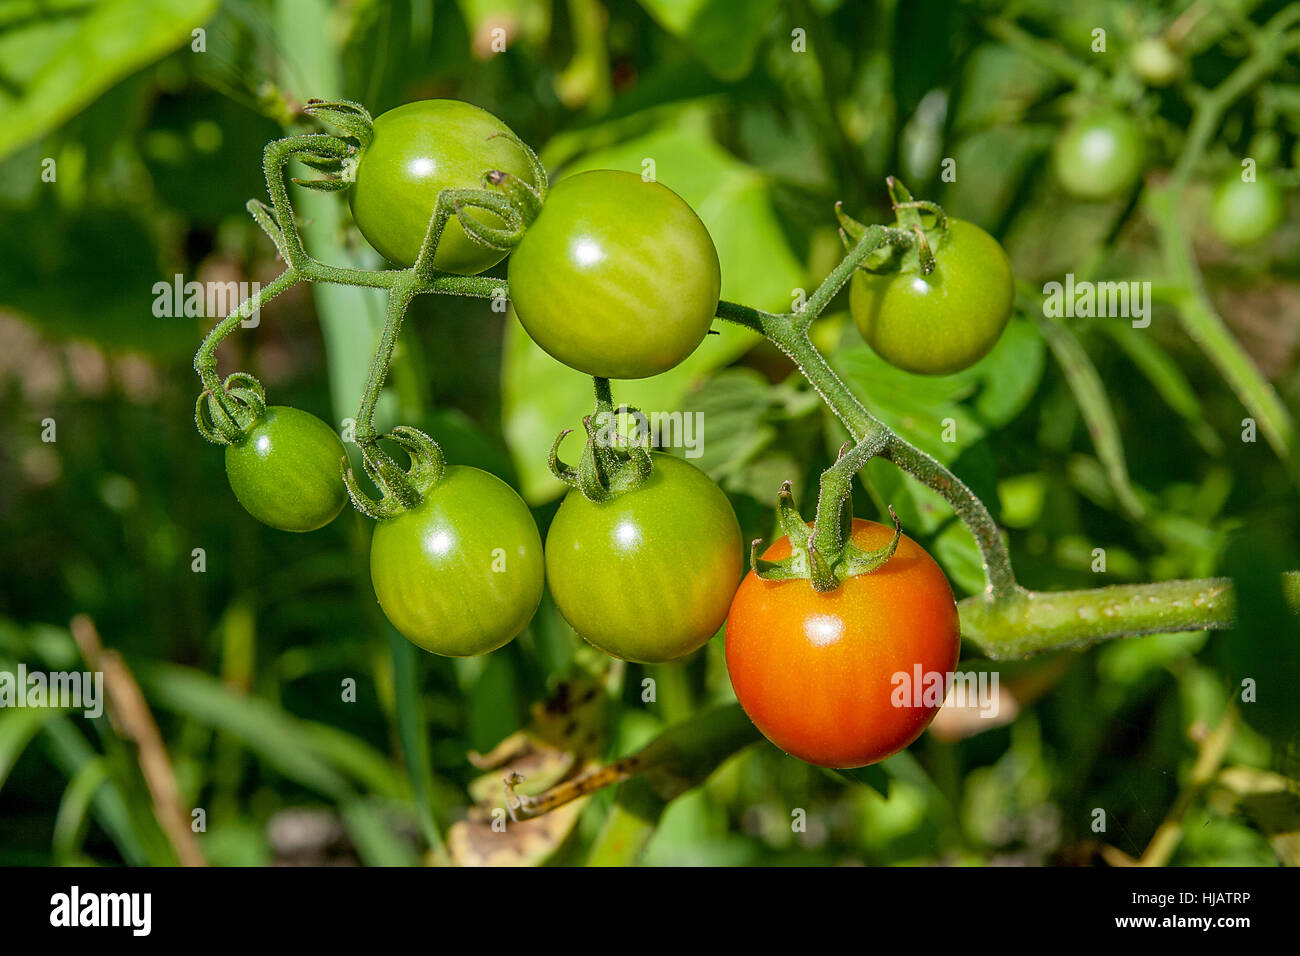 Verde e Rosso e i pomodori ciliegia sul ramo. Coltivazione di pomodori ciliegini in giardino. Profondità di campo. Focus sui pomodori. Foto Stock